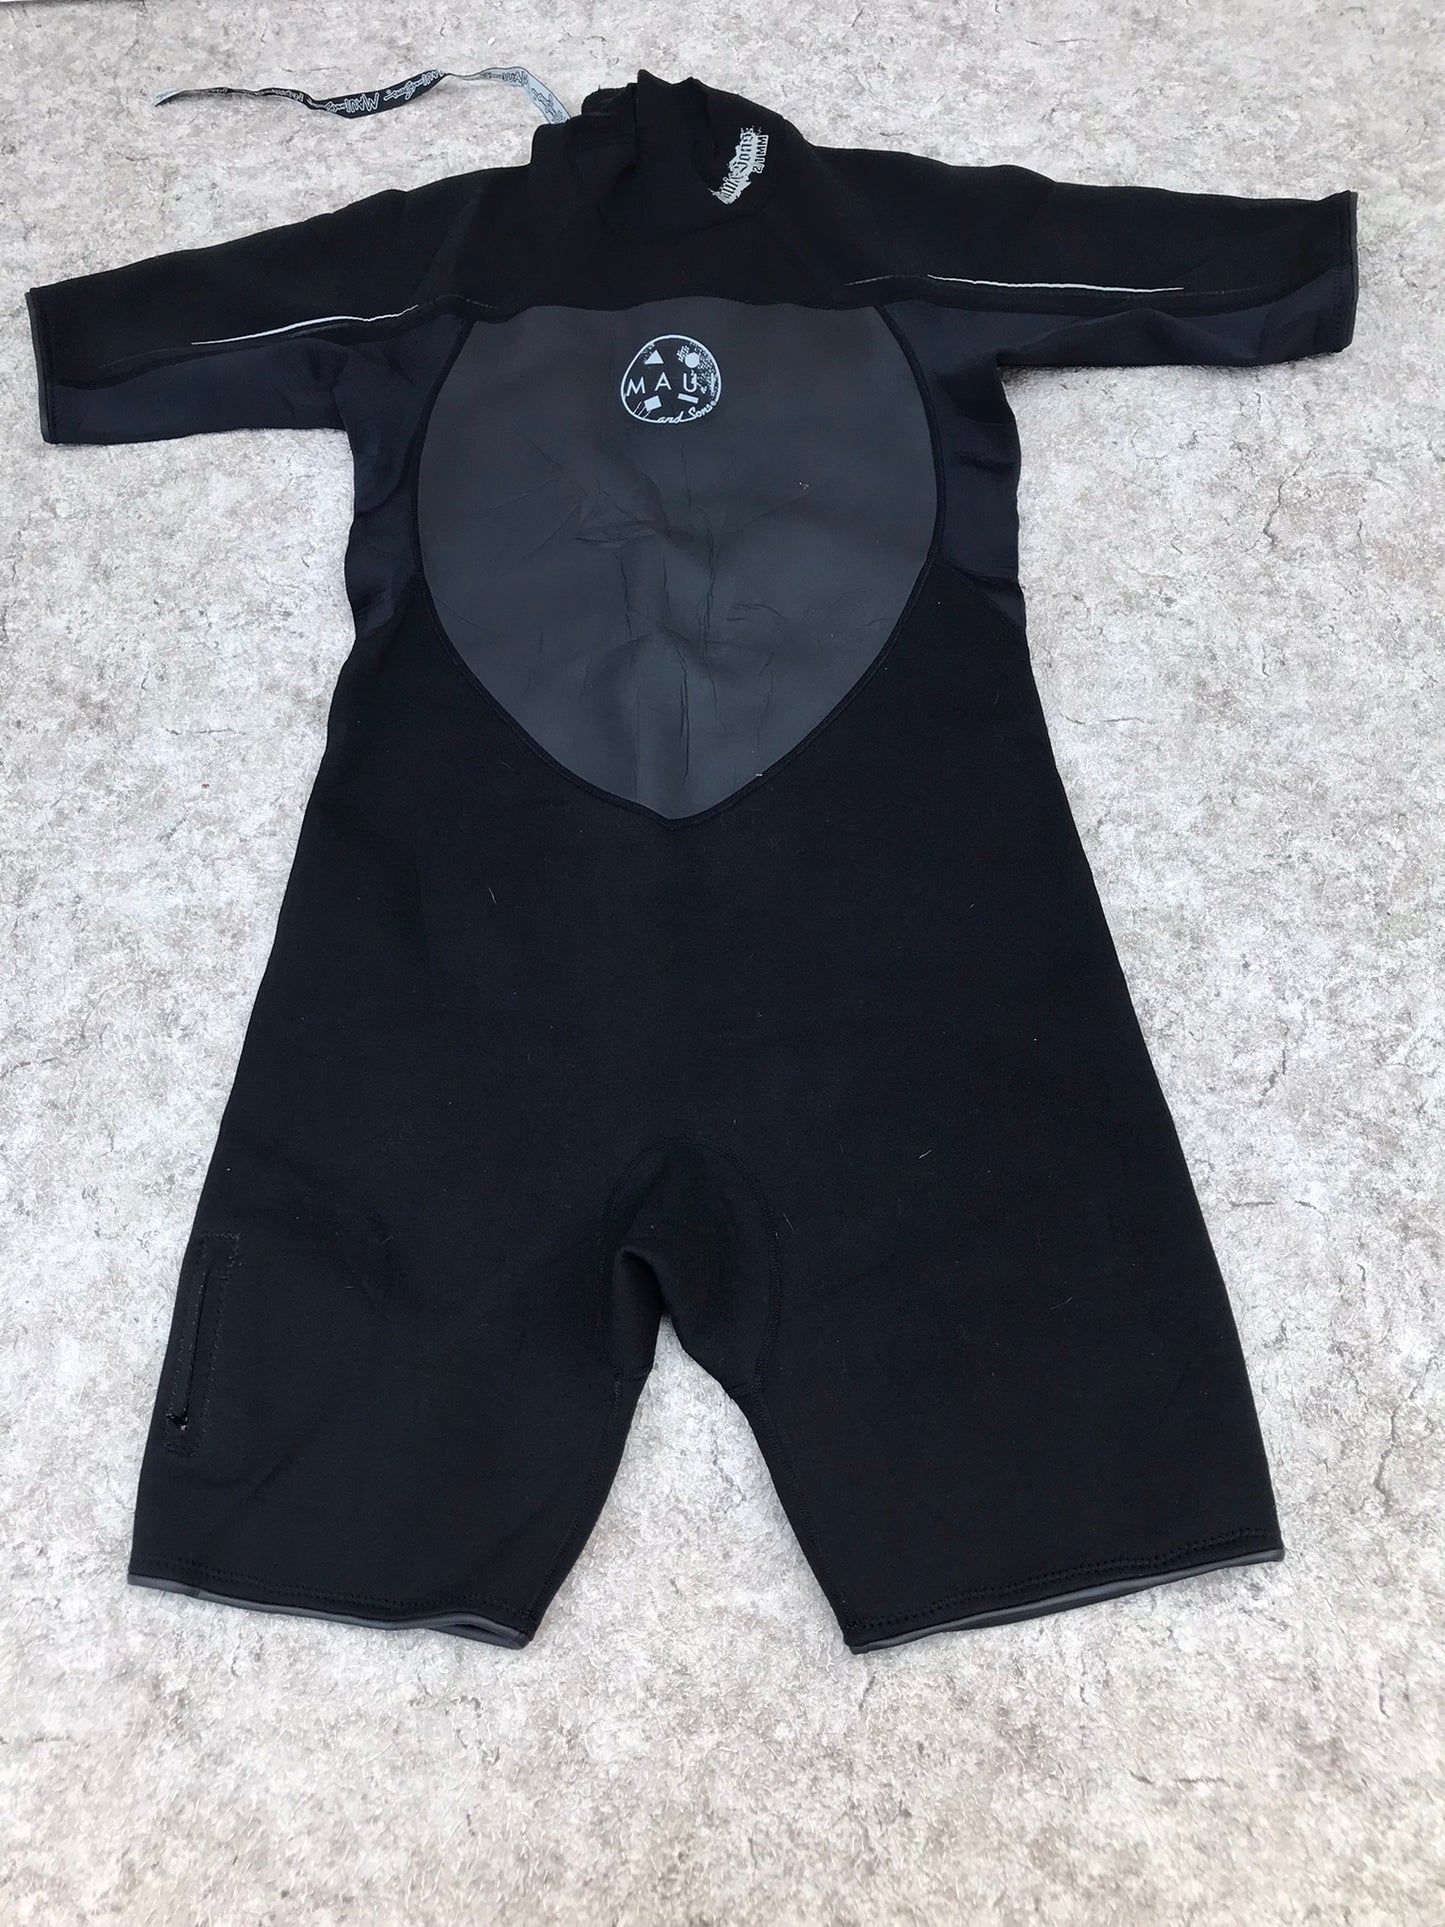 Wetsuit Men's Size XX Large Maui And Sons 2-3 mm Black Excellent